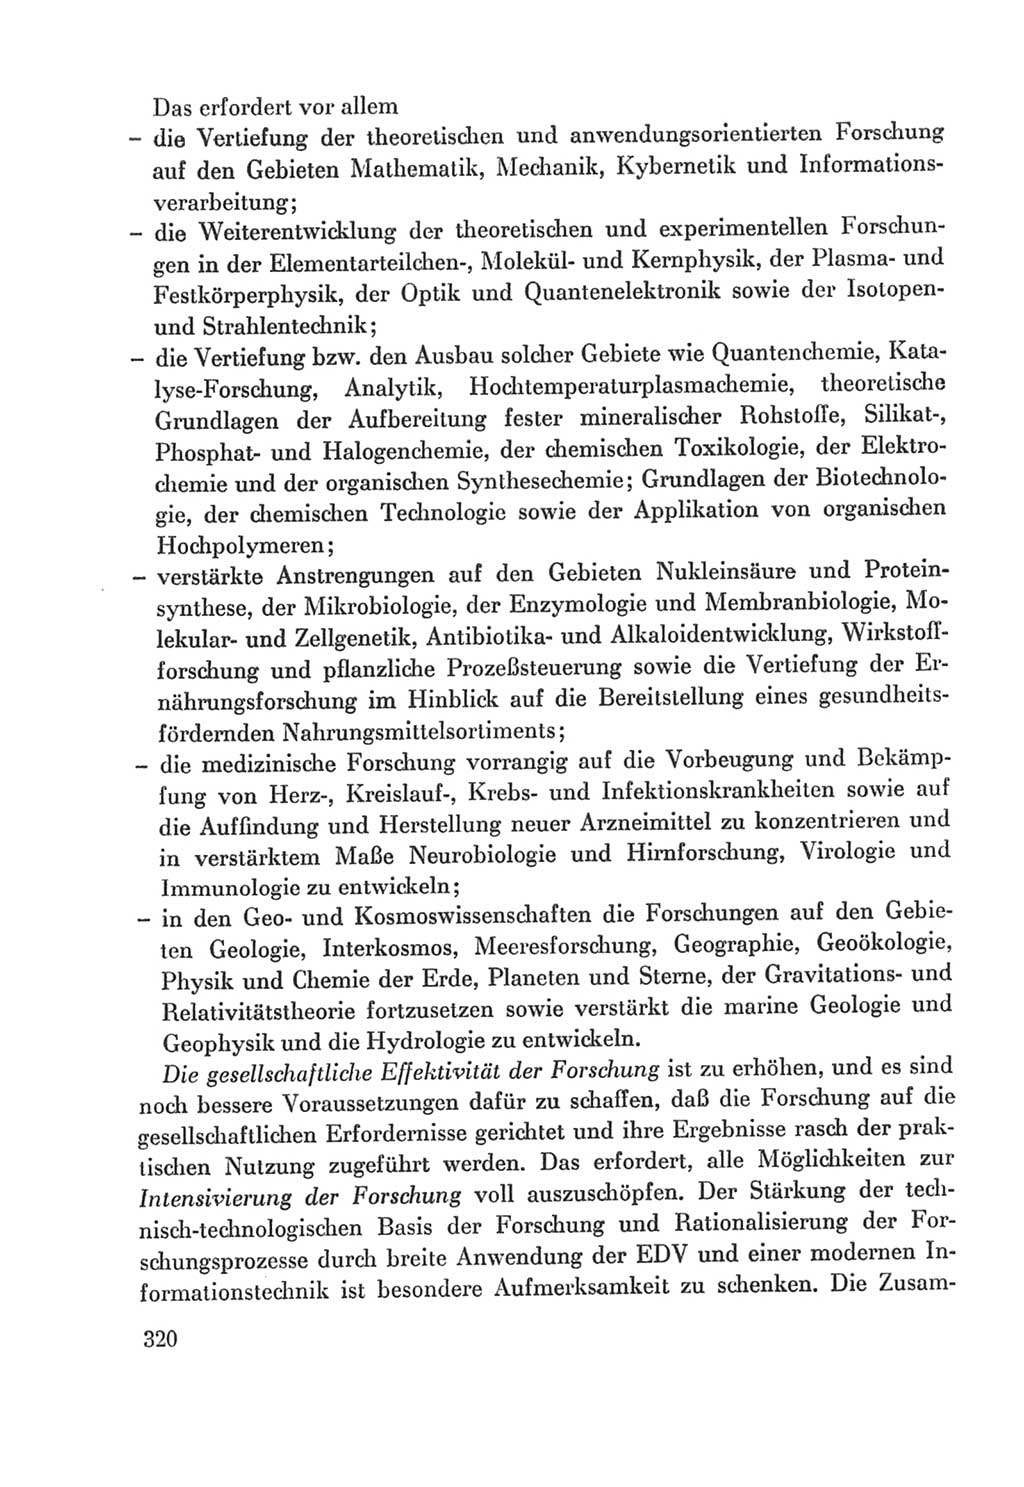 Protokoll der Verhandlungen des Ⅸ. Parteitages der Sozialistischen Einheitspartei Deutschlands (SED) [Deutsche Demokratische Republik (DDR)] 1976, Band 2, Seite 320 (Prot. Verh. Ⅸ. PT SED DDR 1976, Bd. 2, S. 320)